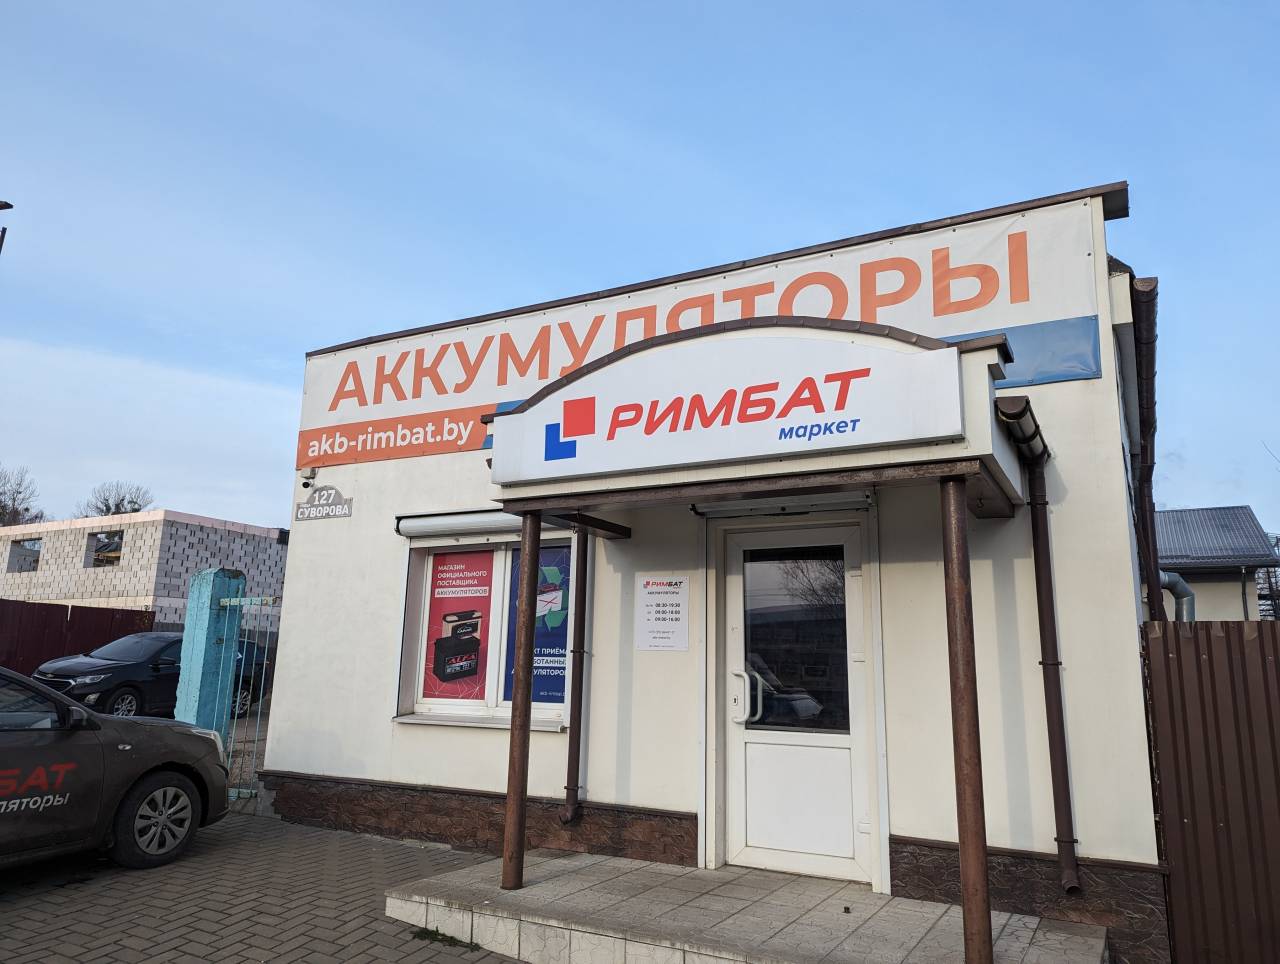 Магазин аккумуляторов РИМБАТ в Гродно объявляет акцию на популярные батареи по супер-цене в феврале. Что там вообще можно выбрать?